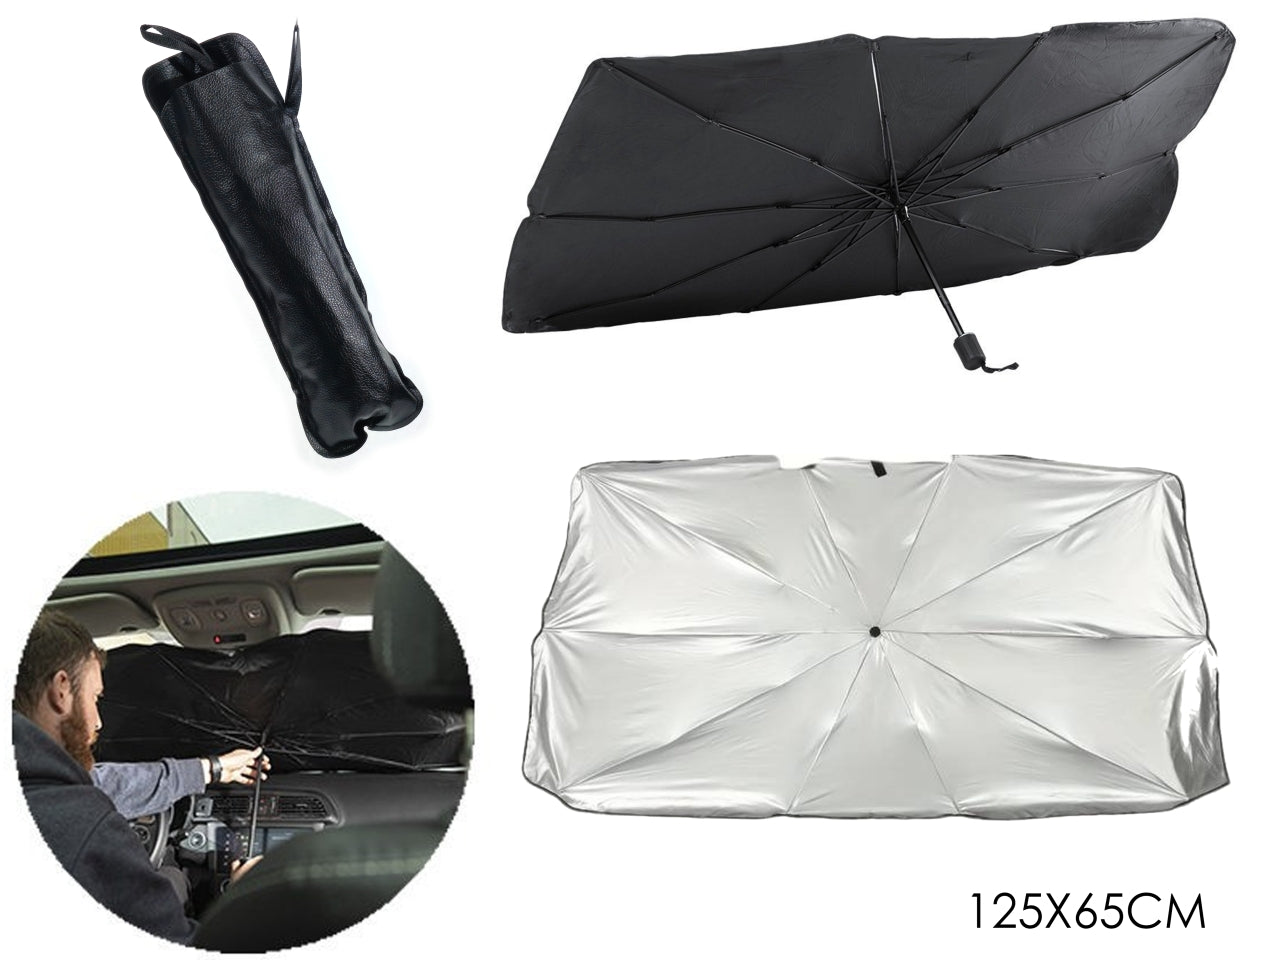 Parasole pieghevole per auto in poliestere e acciaio nero e argentato, ad ombrello, 125x65 cm, include sacca - Autosprint